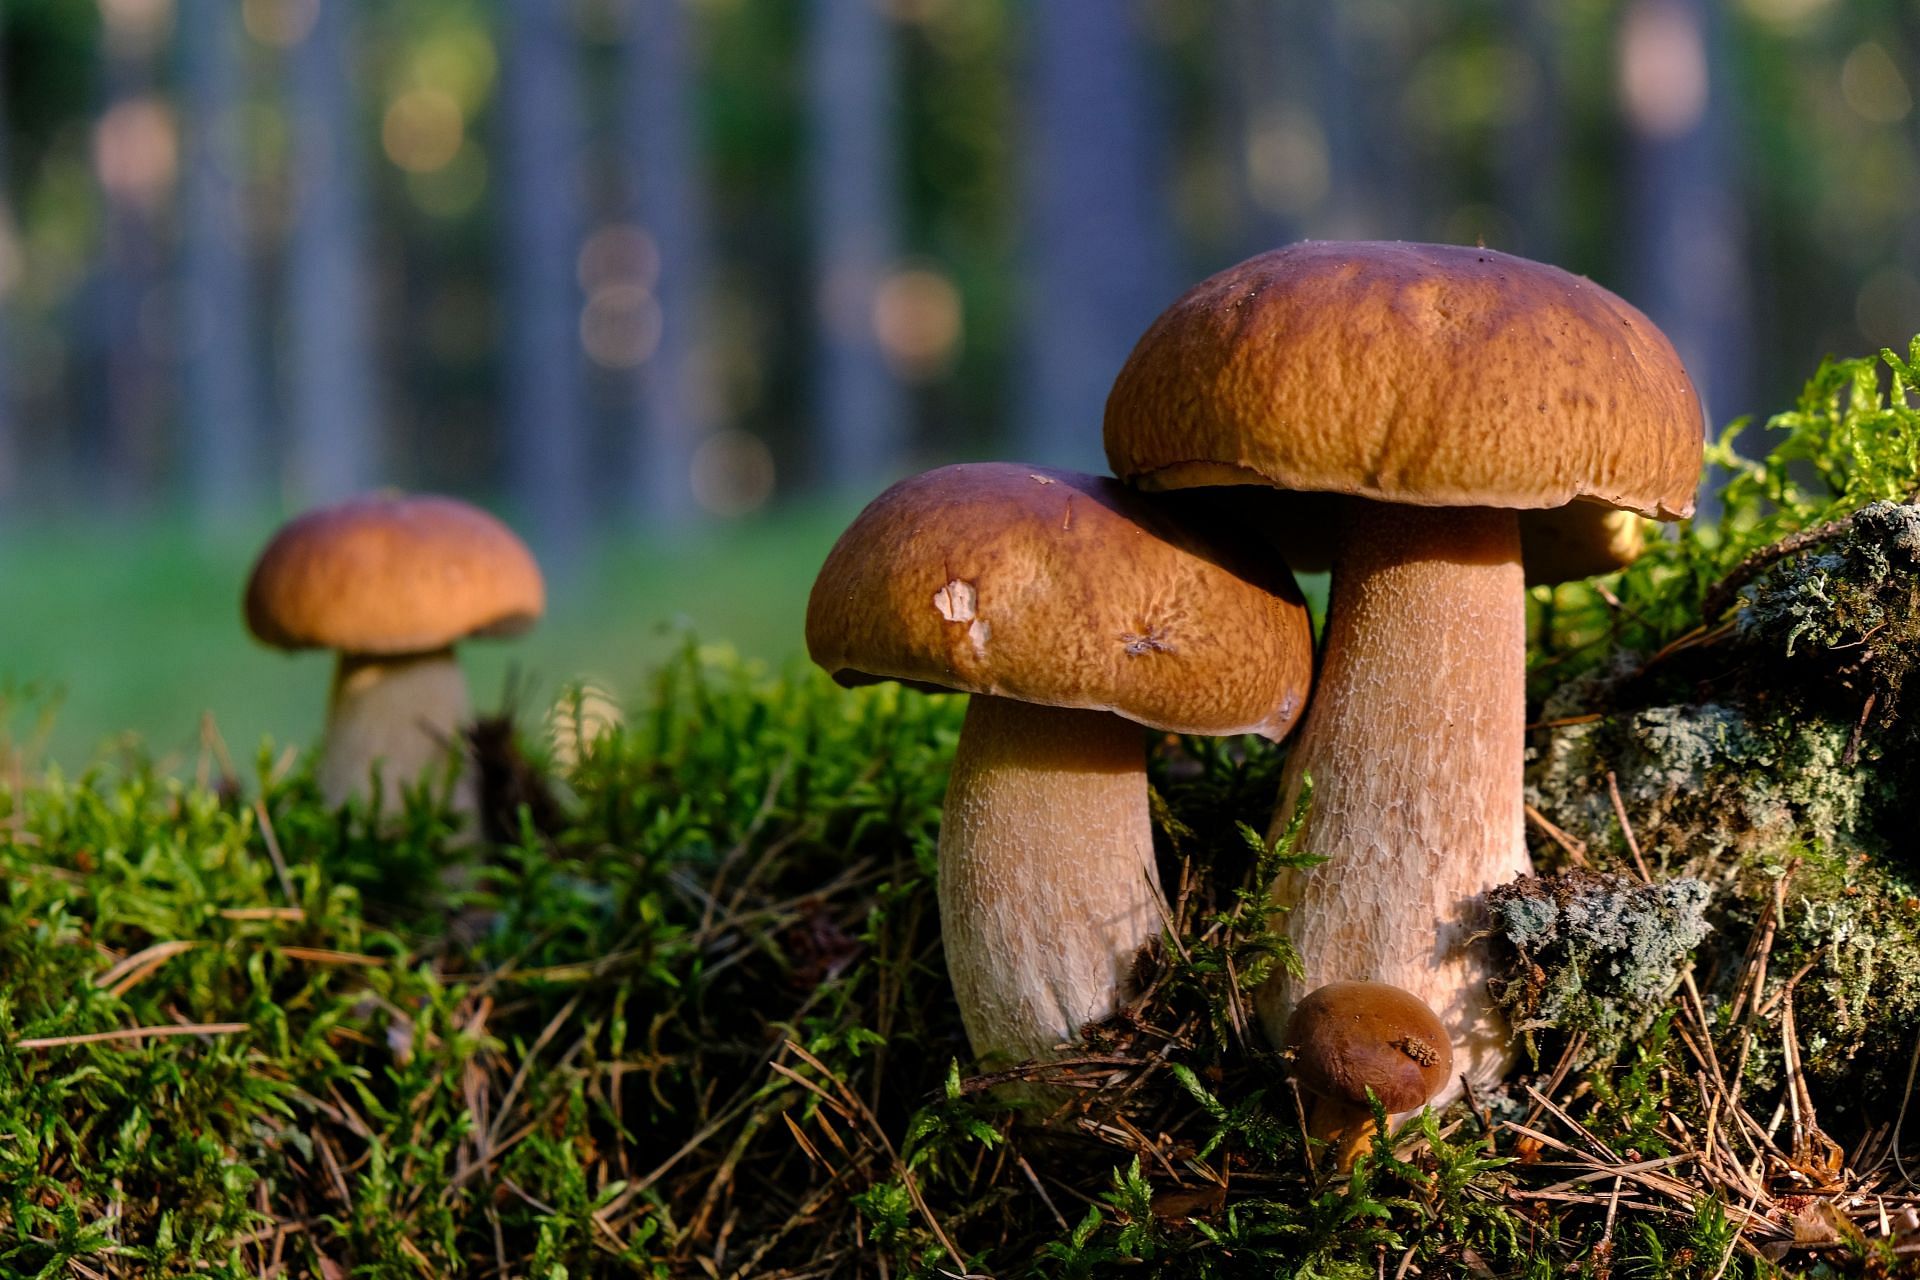 Mushrooms (Image via Unsplash/Transly)